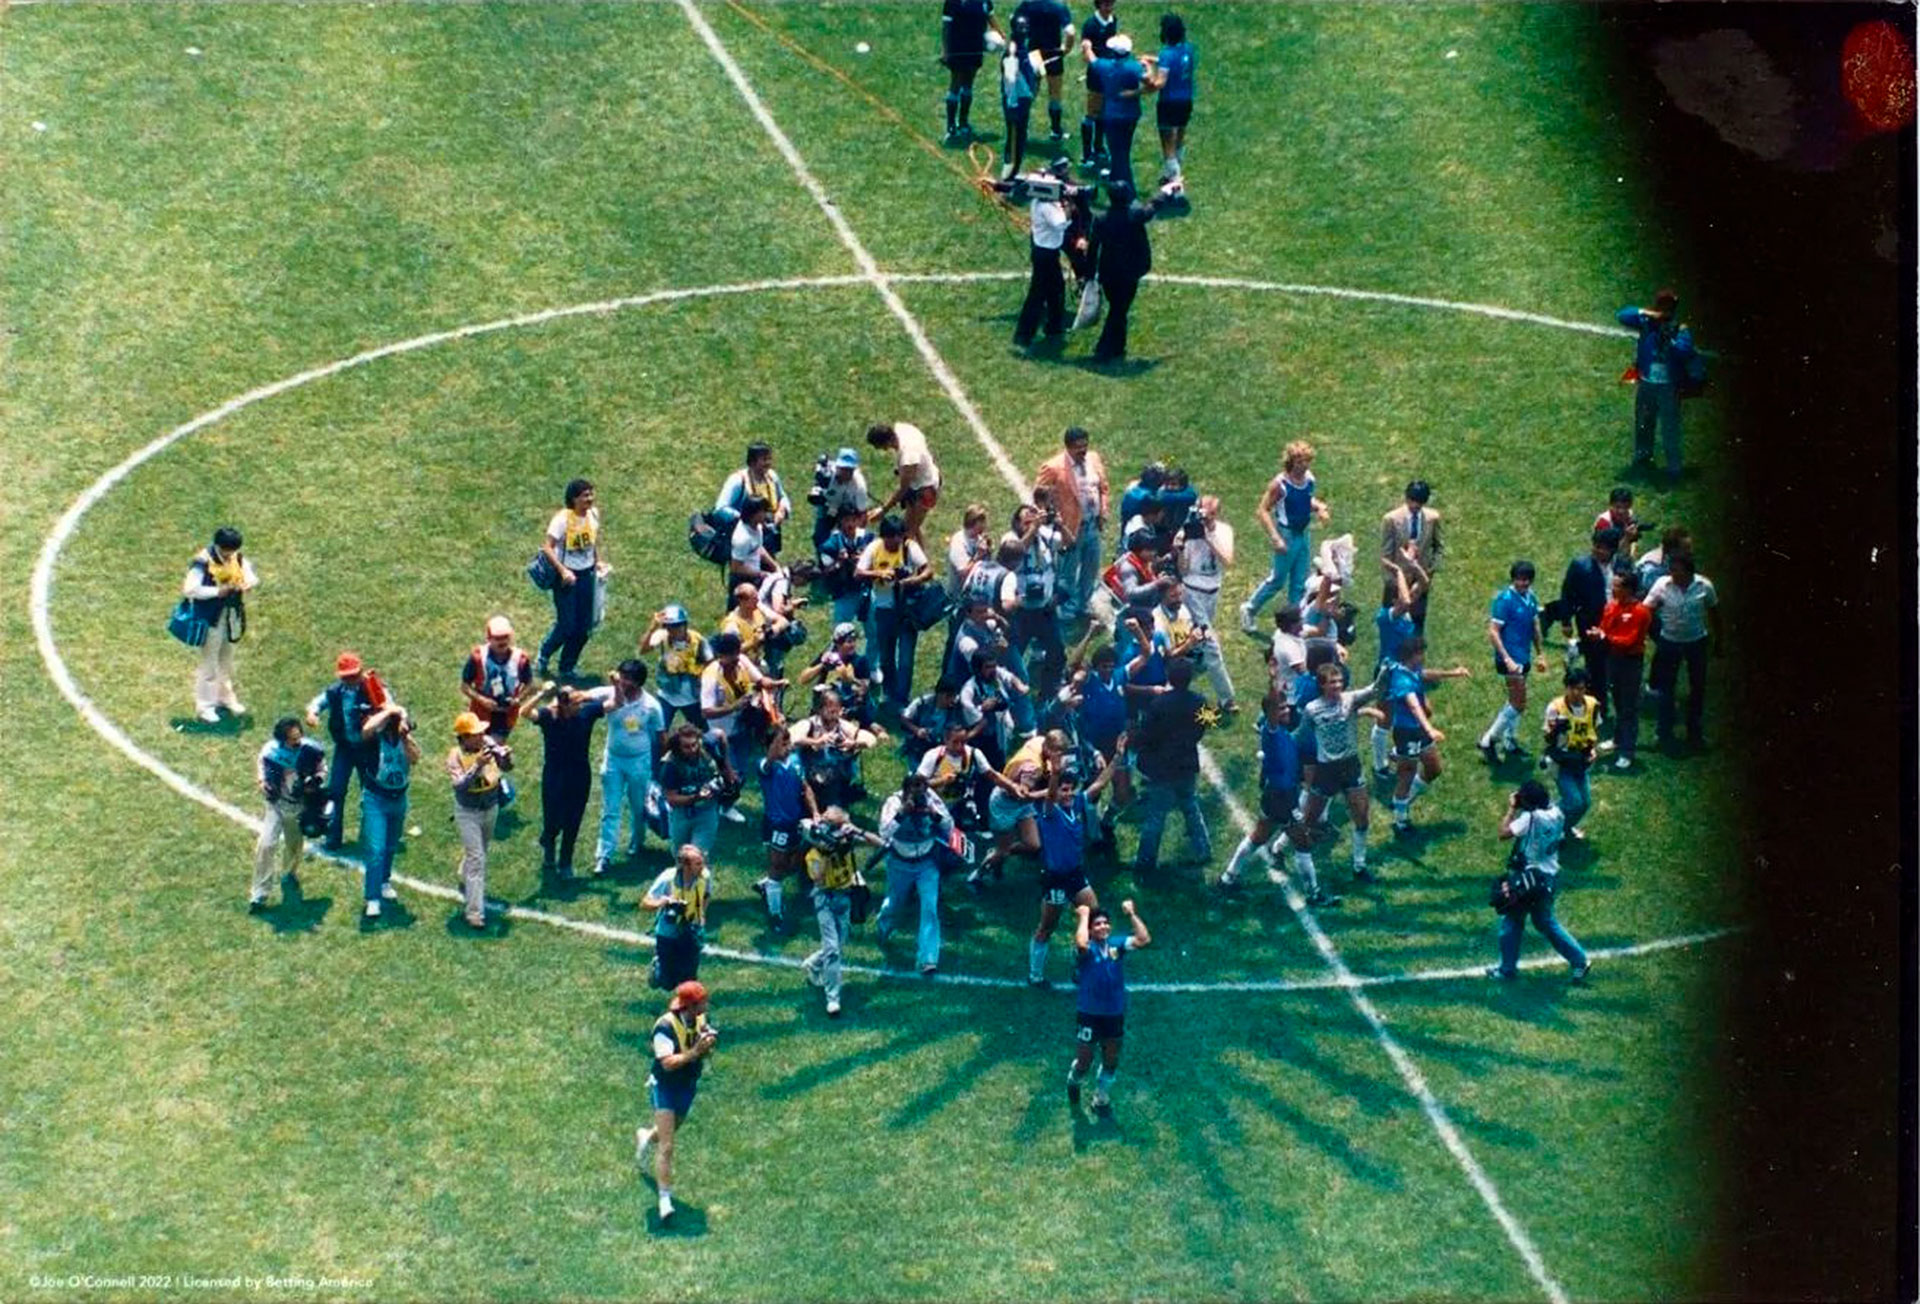 La celebración de la selección argentina ante los ingleses en México 86 (BettingAmerica)